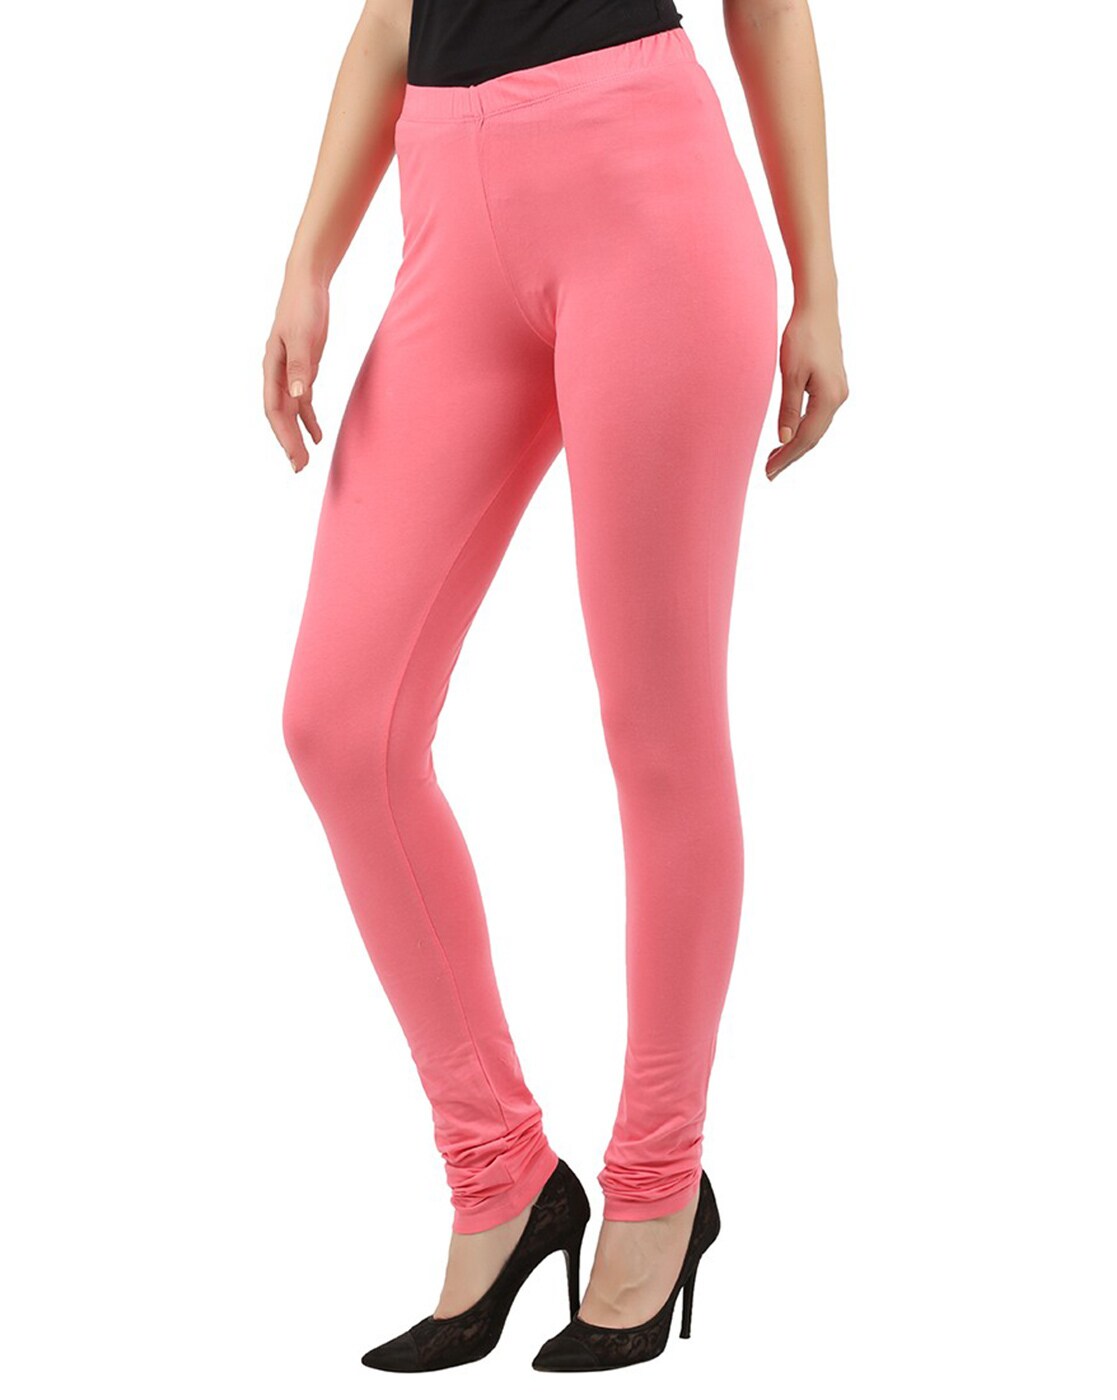 Buy Pink Leggings Cotton Pink Leggings, Blush Pink Leggings,leggings,yoga  Leggings,light Pink Leggings,medium Pink Leggings, Hot Pink Leggings Online  in India - Etsy